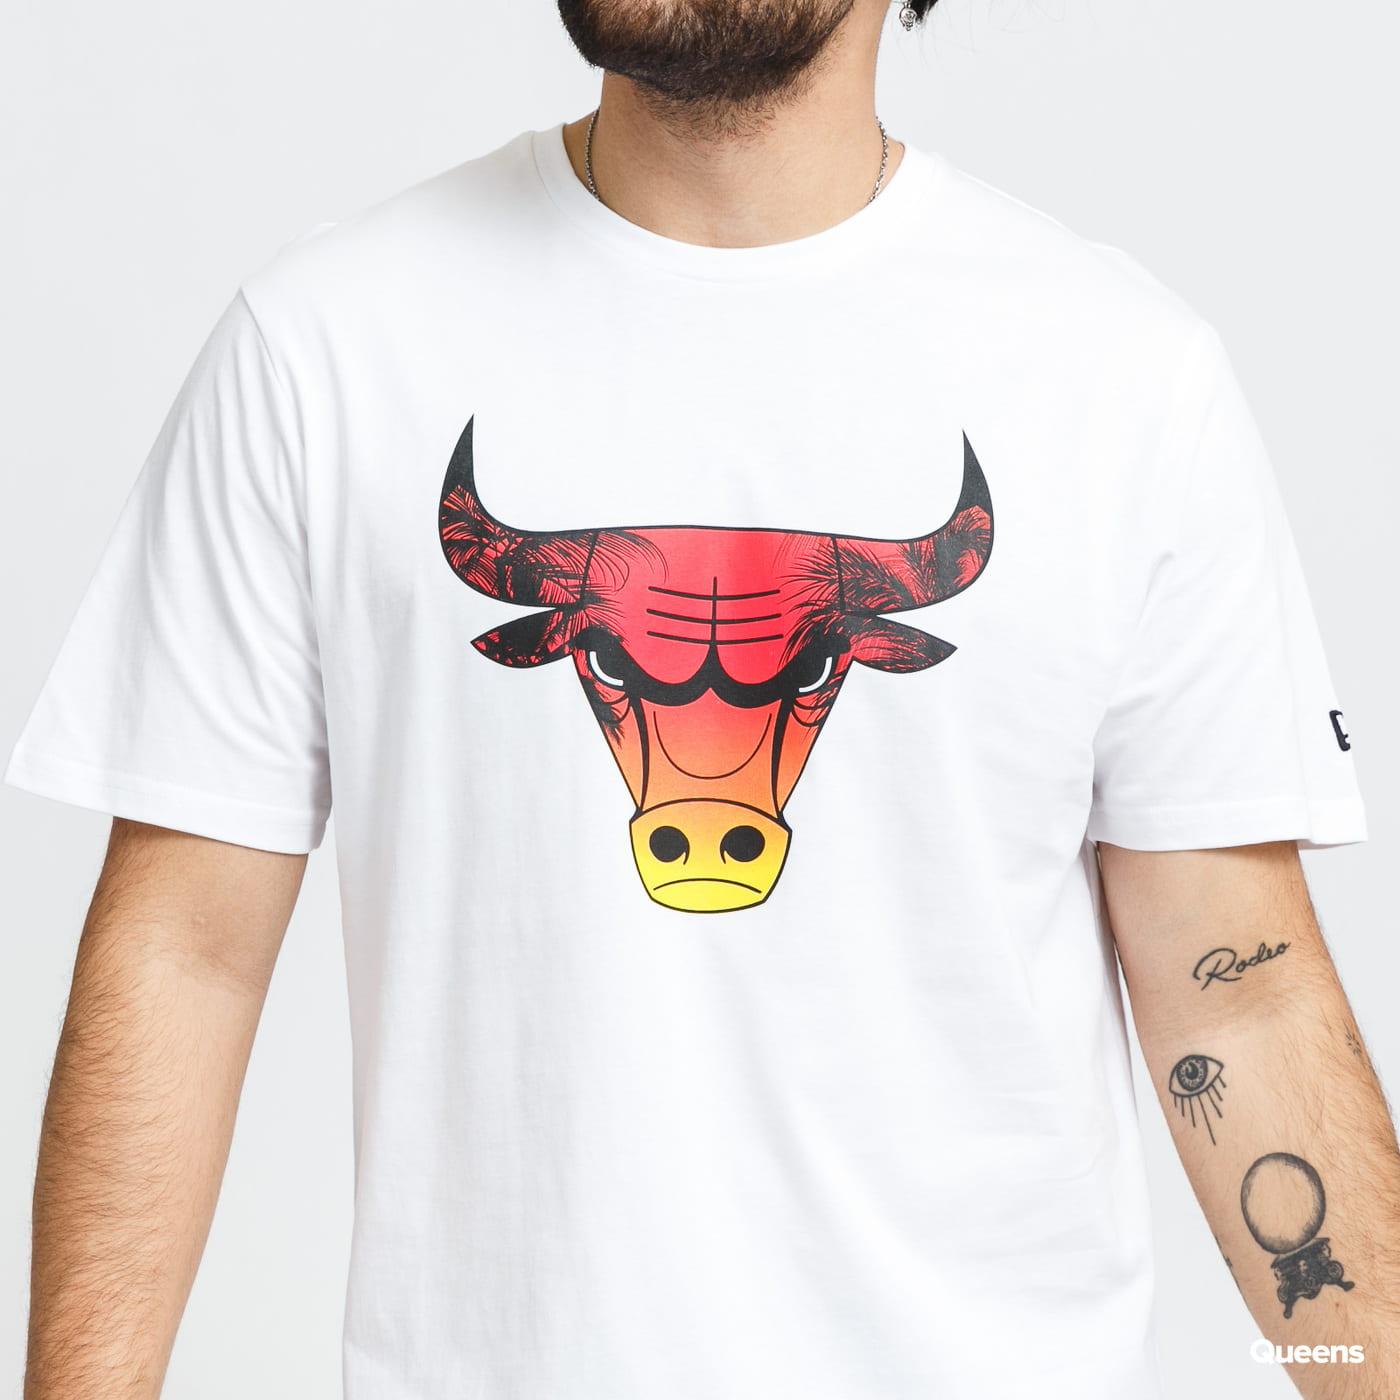 Official New Era NBA Baseball Jersey Chicago Bulls T-Shirt C2_227 C2_227